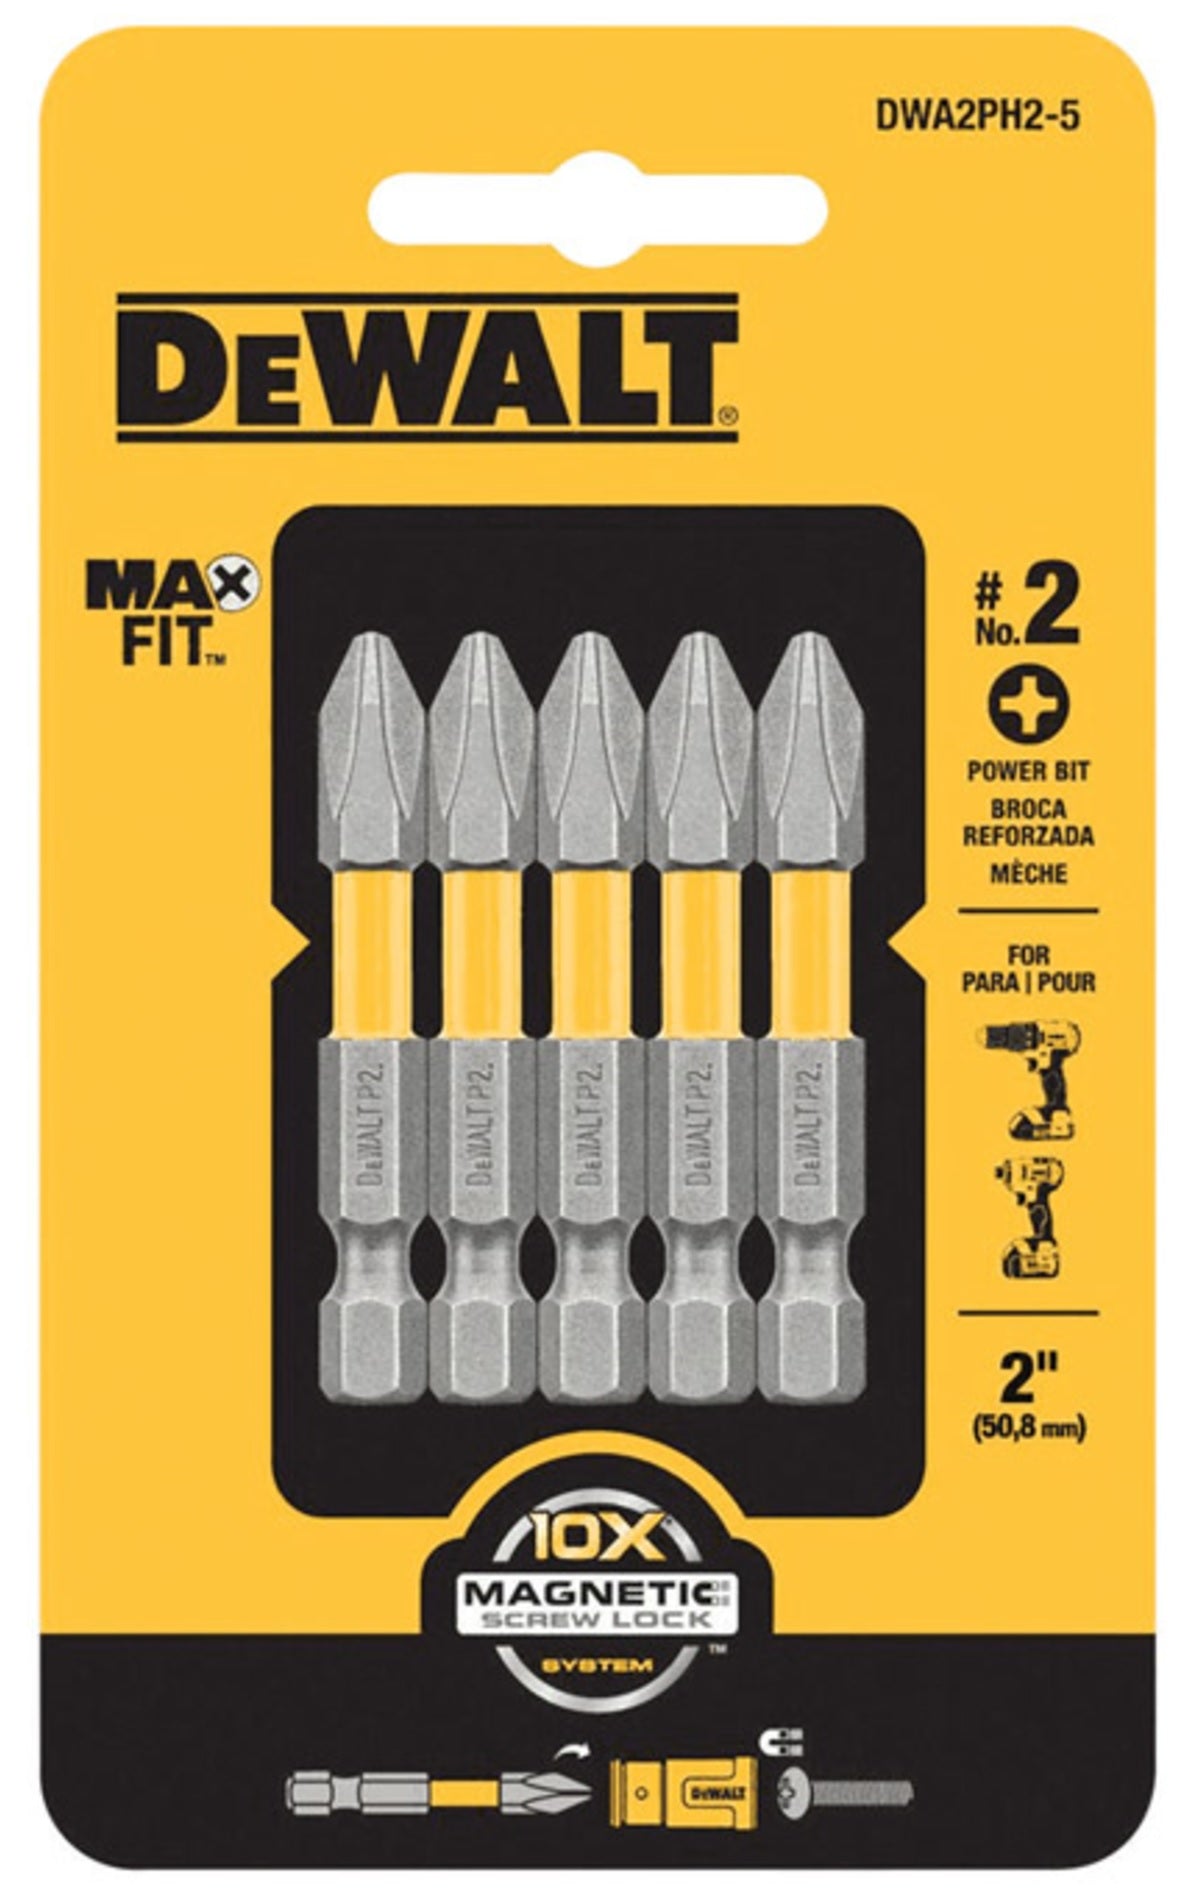 DeWalt DWA2PH2-5 MAXFIT Phillips Power Bits, #2 x 2"